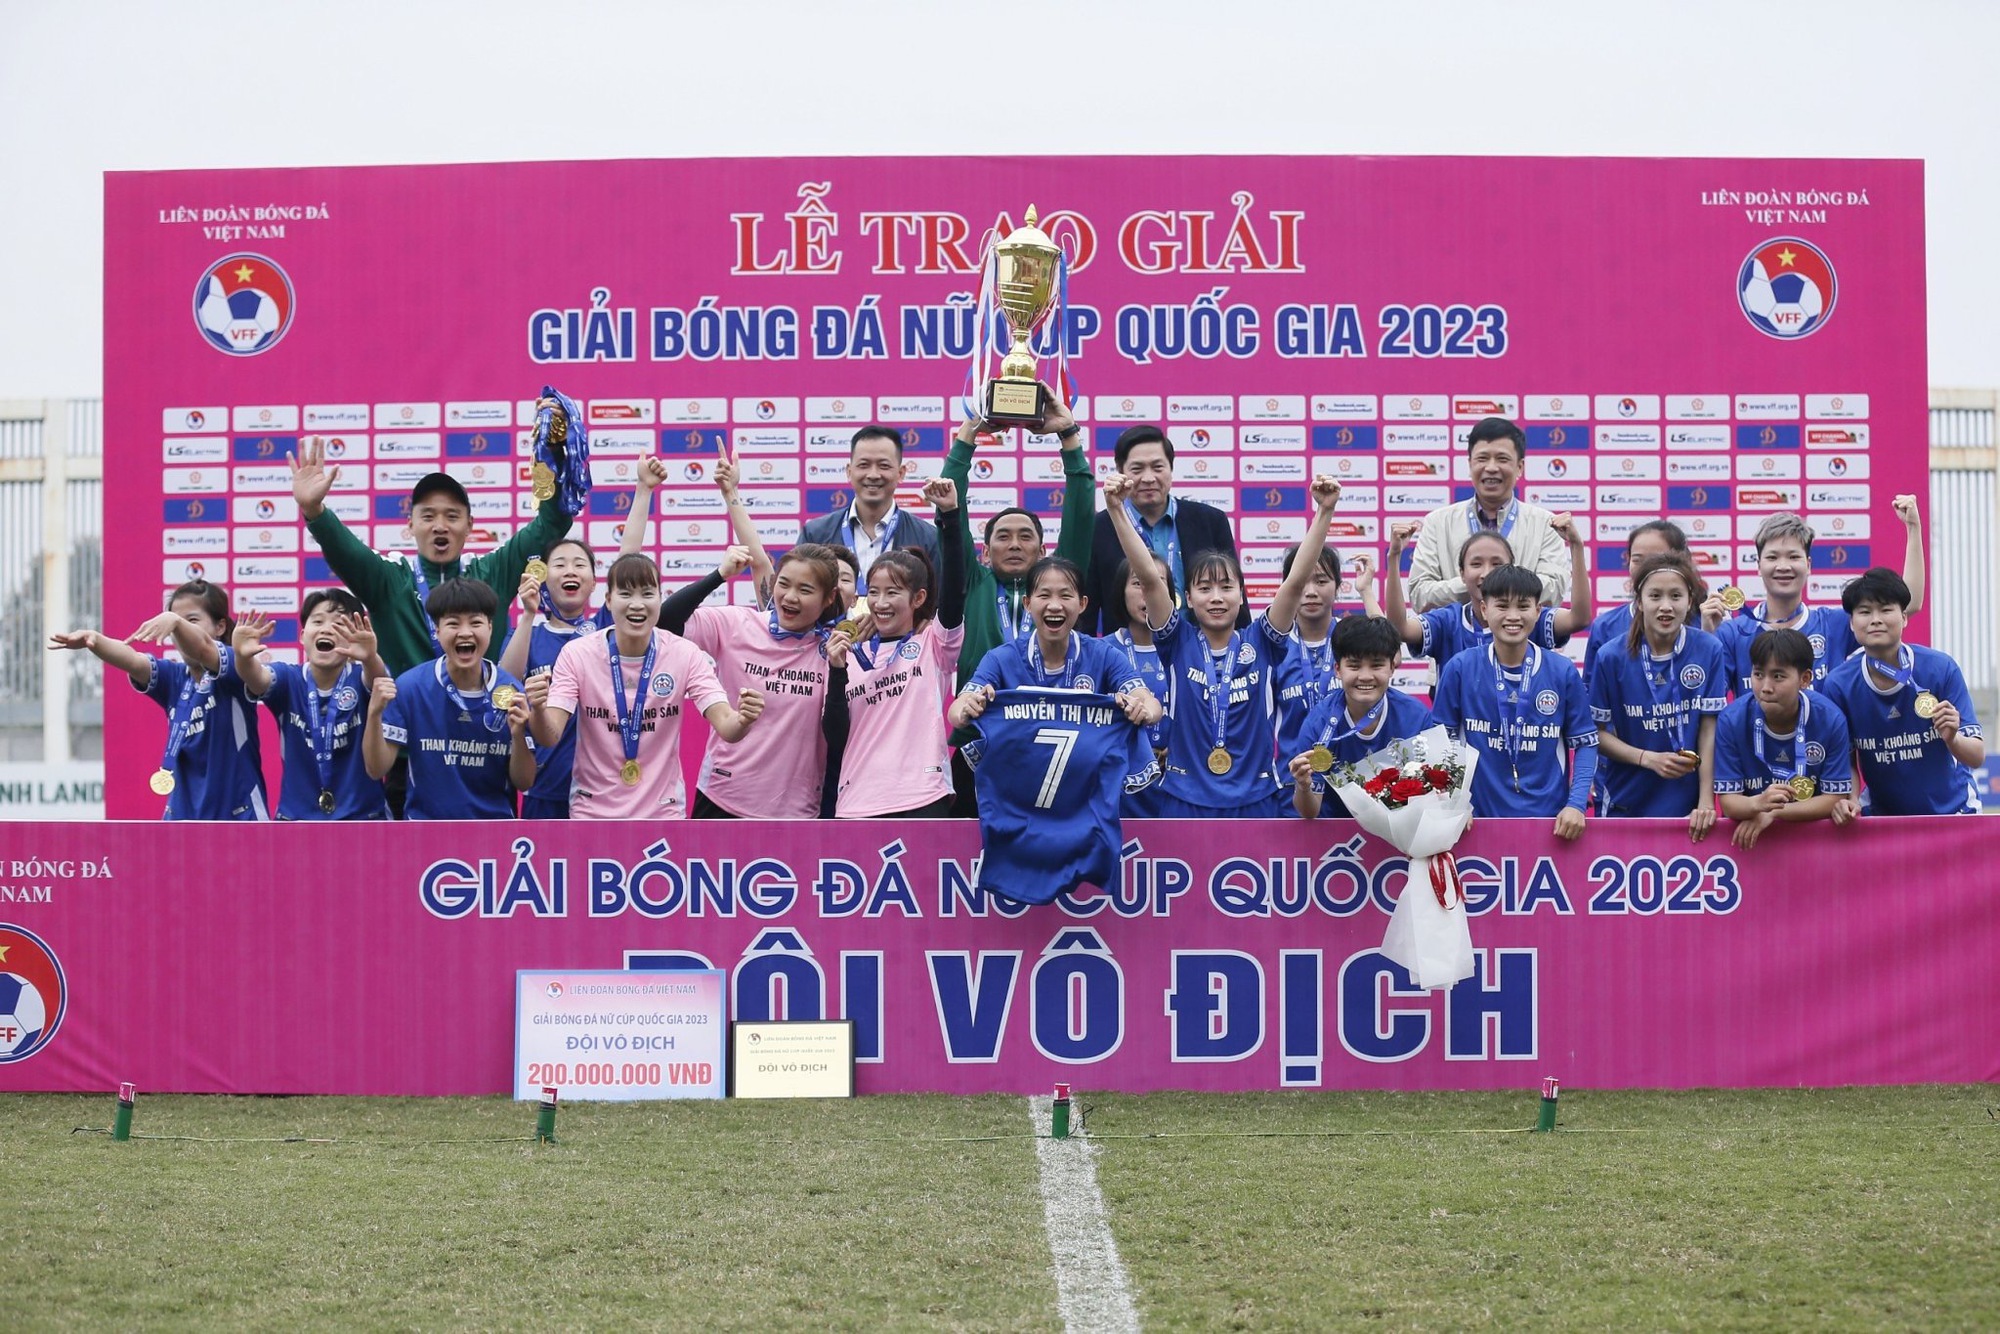 CLB bóng đá nữ Than khoáng sản Việt Nam lần đầu đoạt cúp quốc gia  - Ảnh 8.